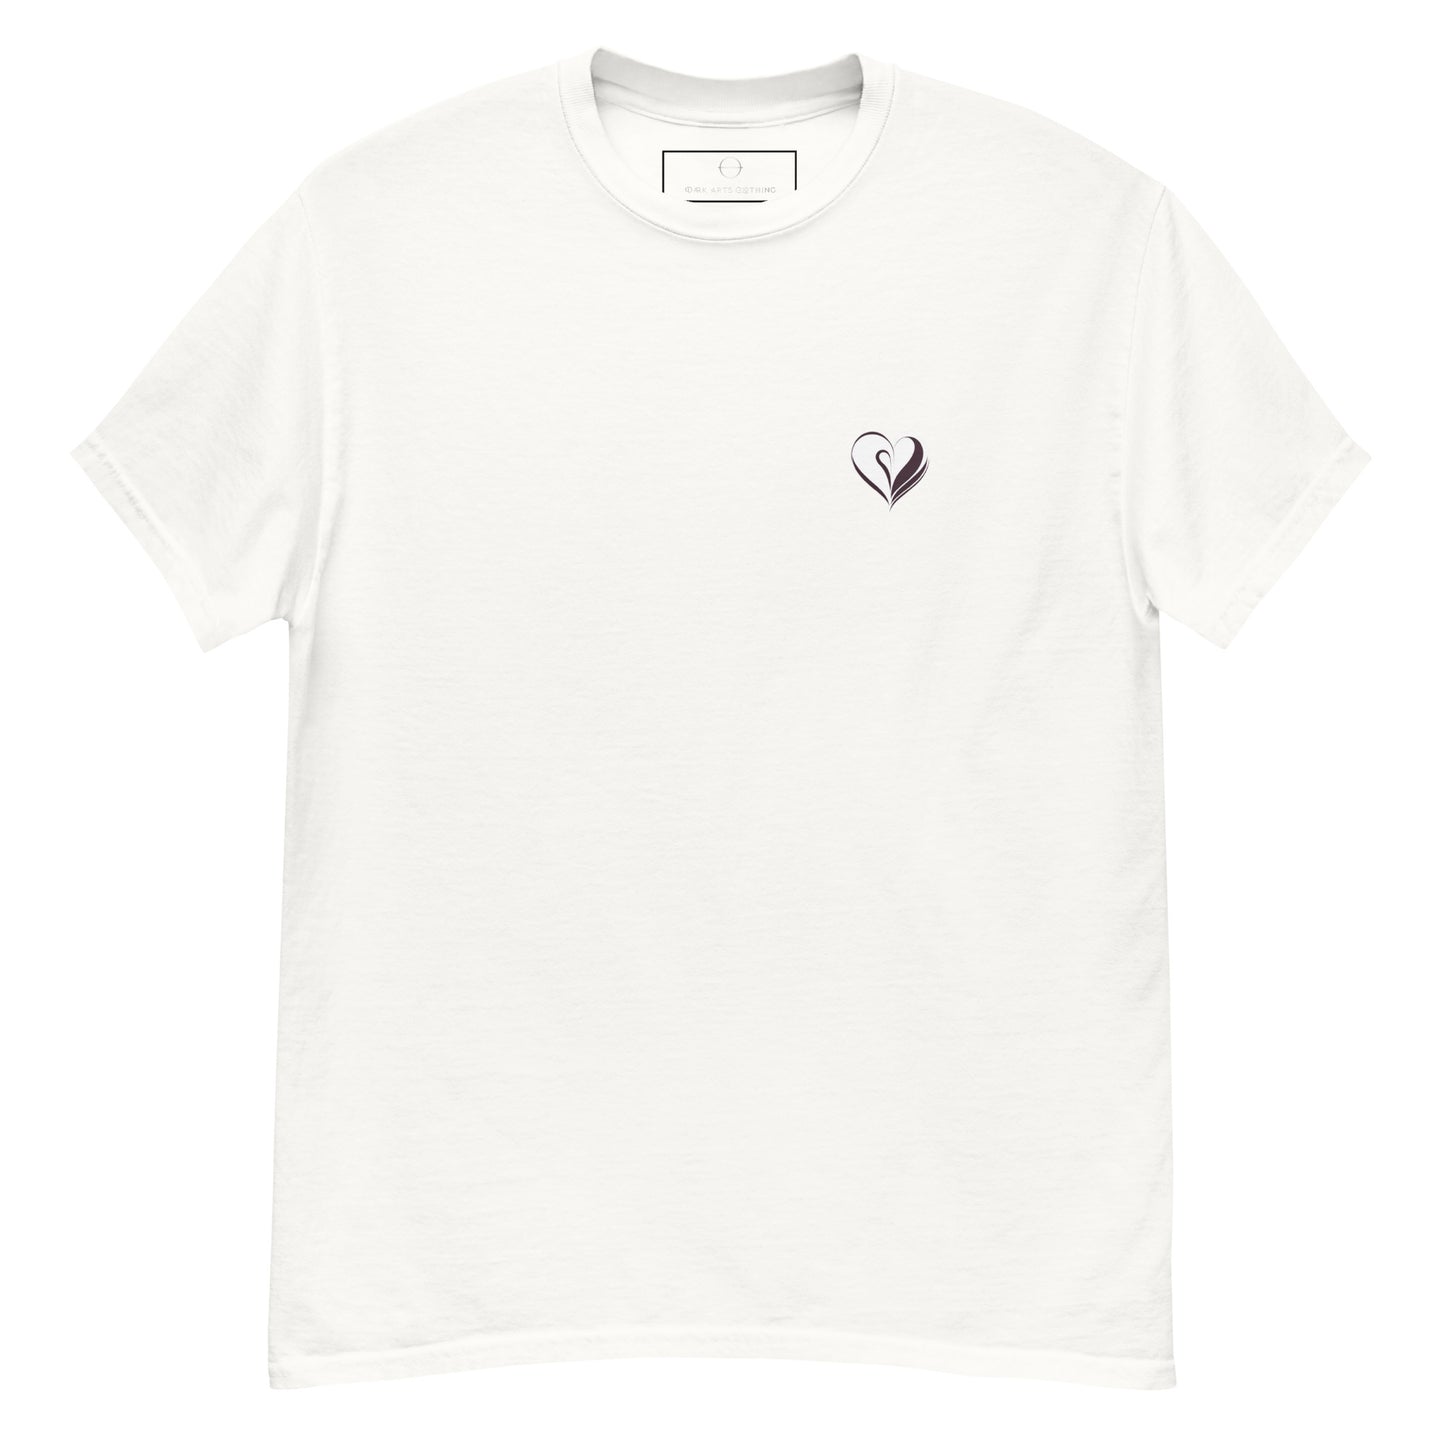 Heart Logo - T Shirt